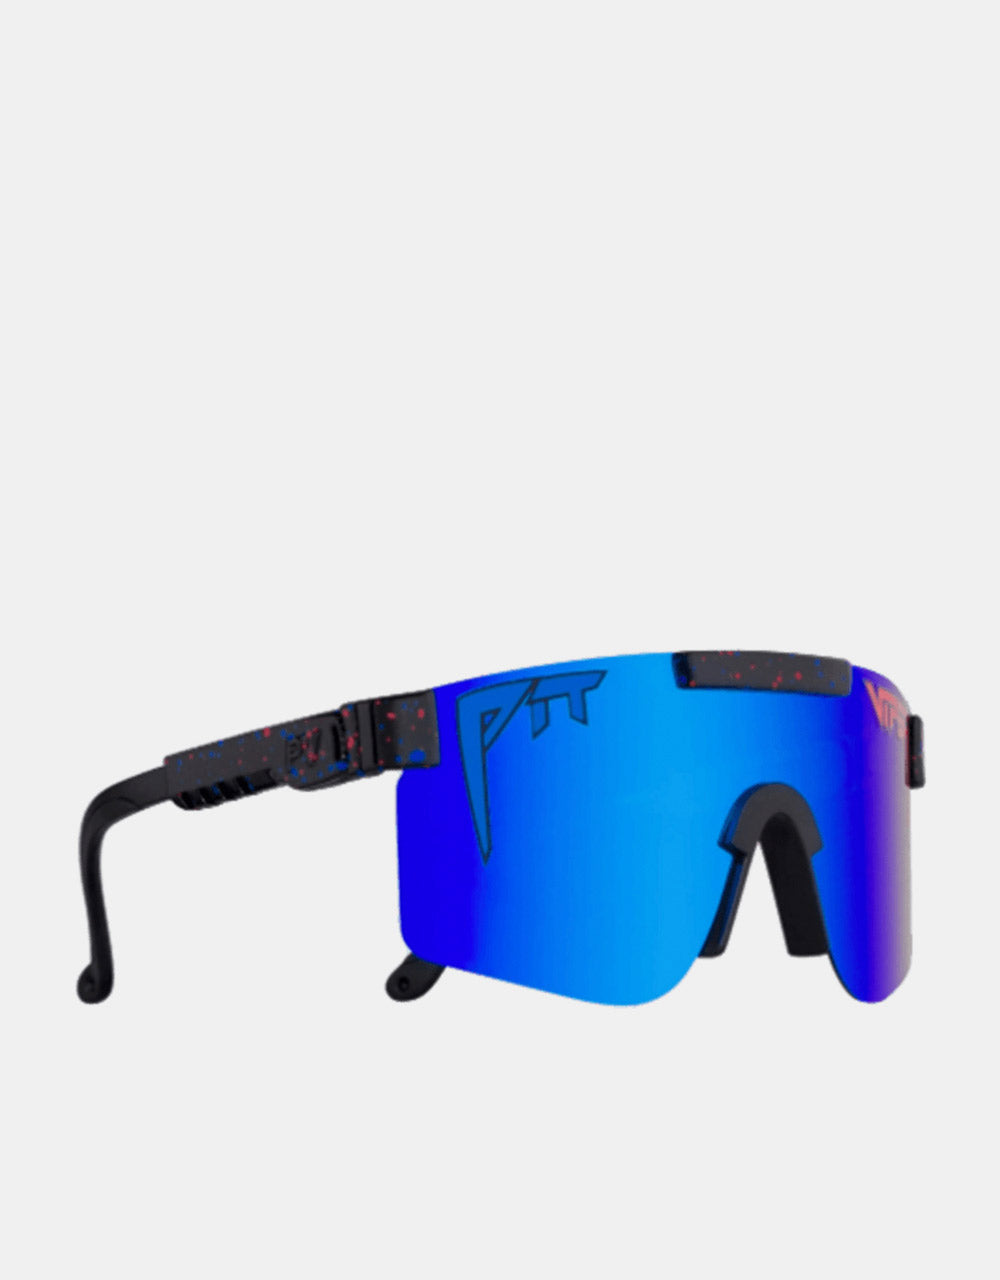 Pit Viper Absolute Liberty Polarized Sunglasses - Blue Revo Mirror